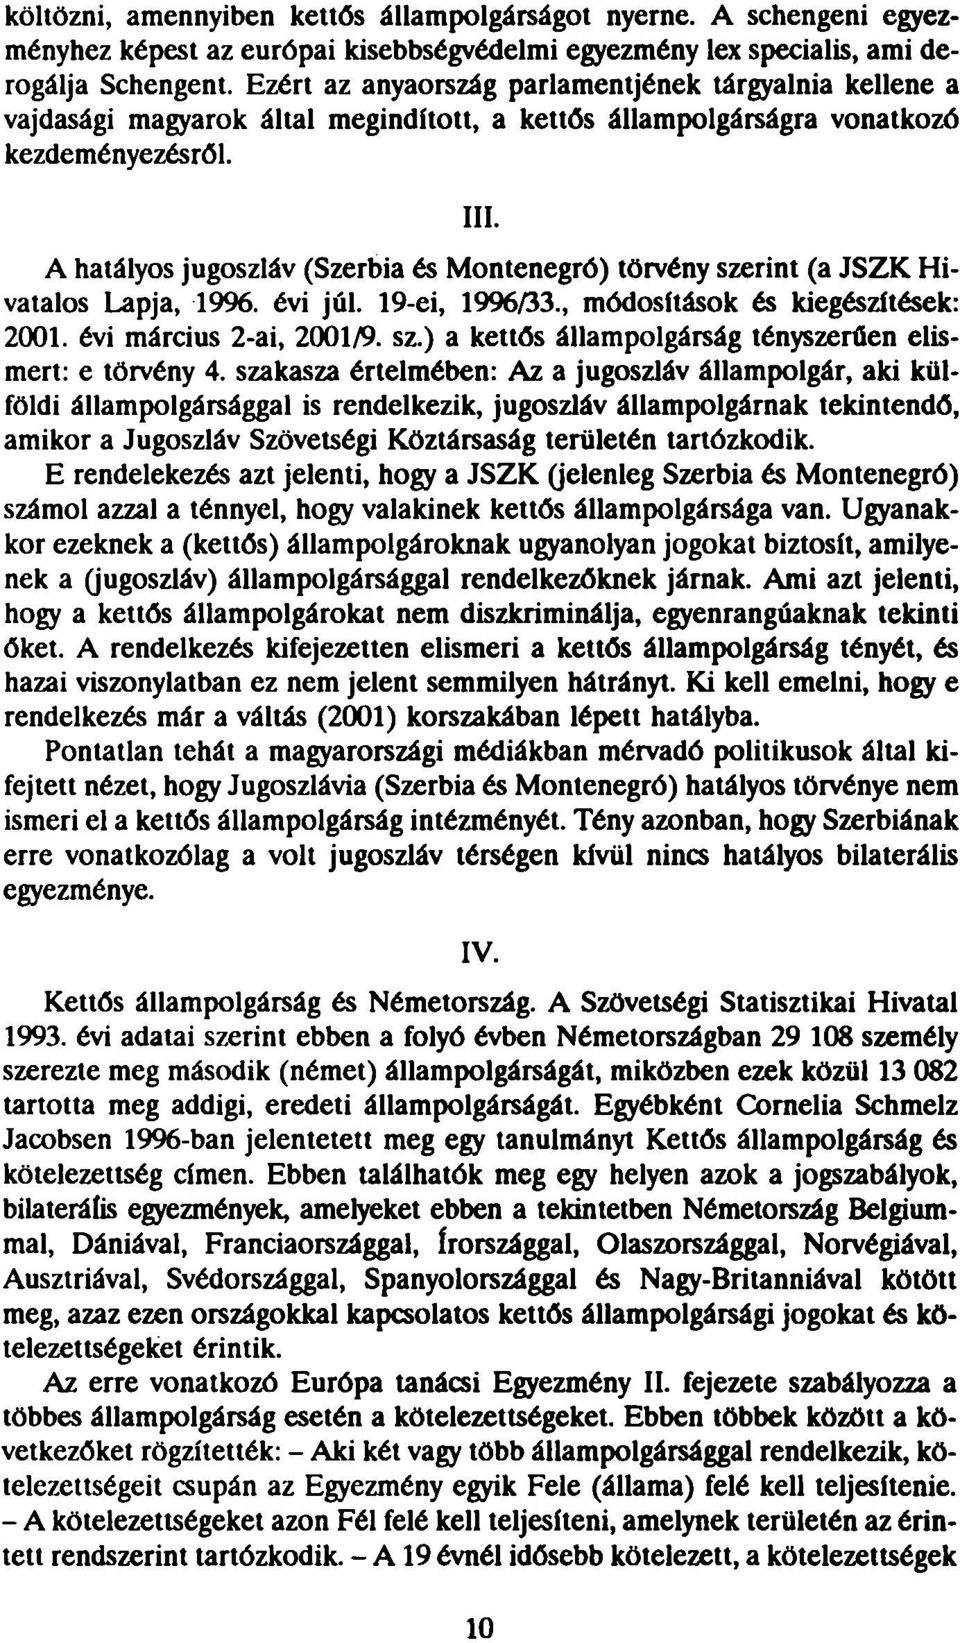 A hatályos jugoszláv (Szerbia és Montenegró) törvény szerint (a JSZK Hivatalos Lapja, 1996. évi júl. 19-ei, 1996/33., módosítások és kiegészítések: 2001. évi március 2-ai, 2001/9. sz.) a kettős állampolgárság tényszerűen elismert: e törvény 4.